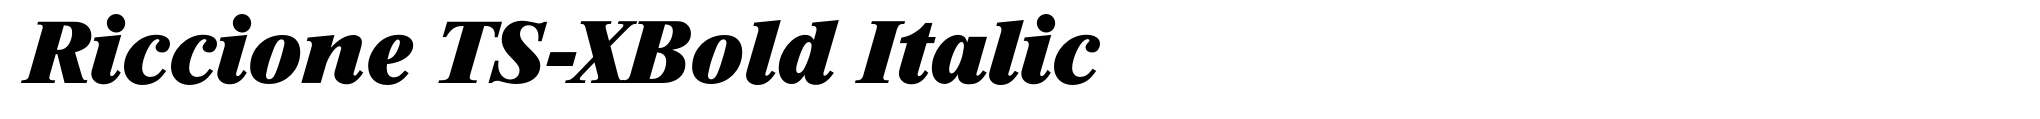 Riccione TS-XBold Italic image